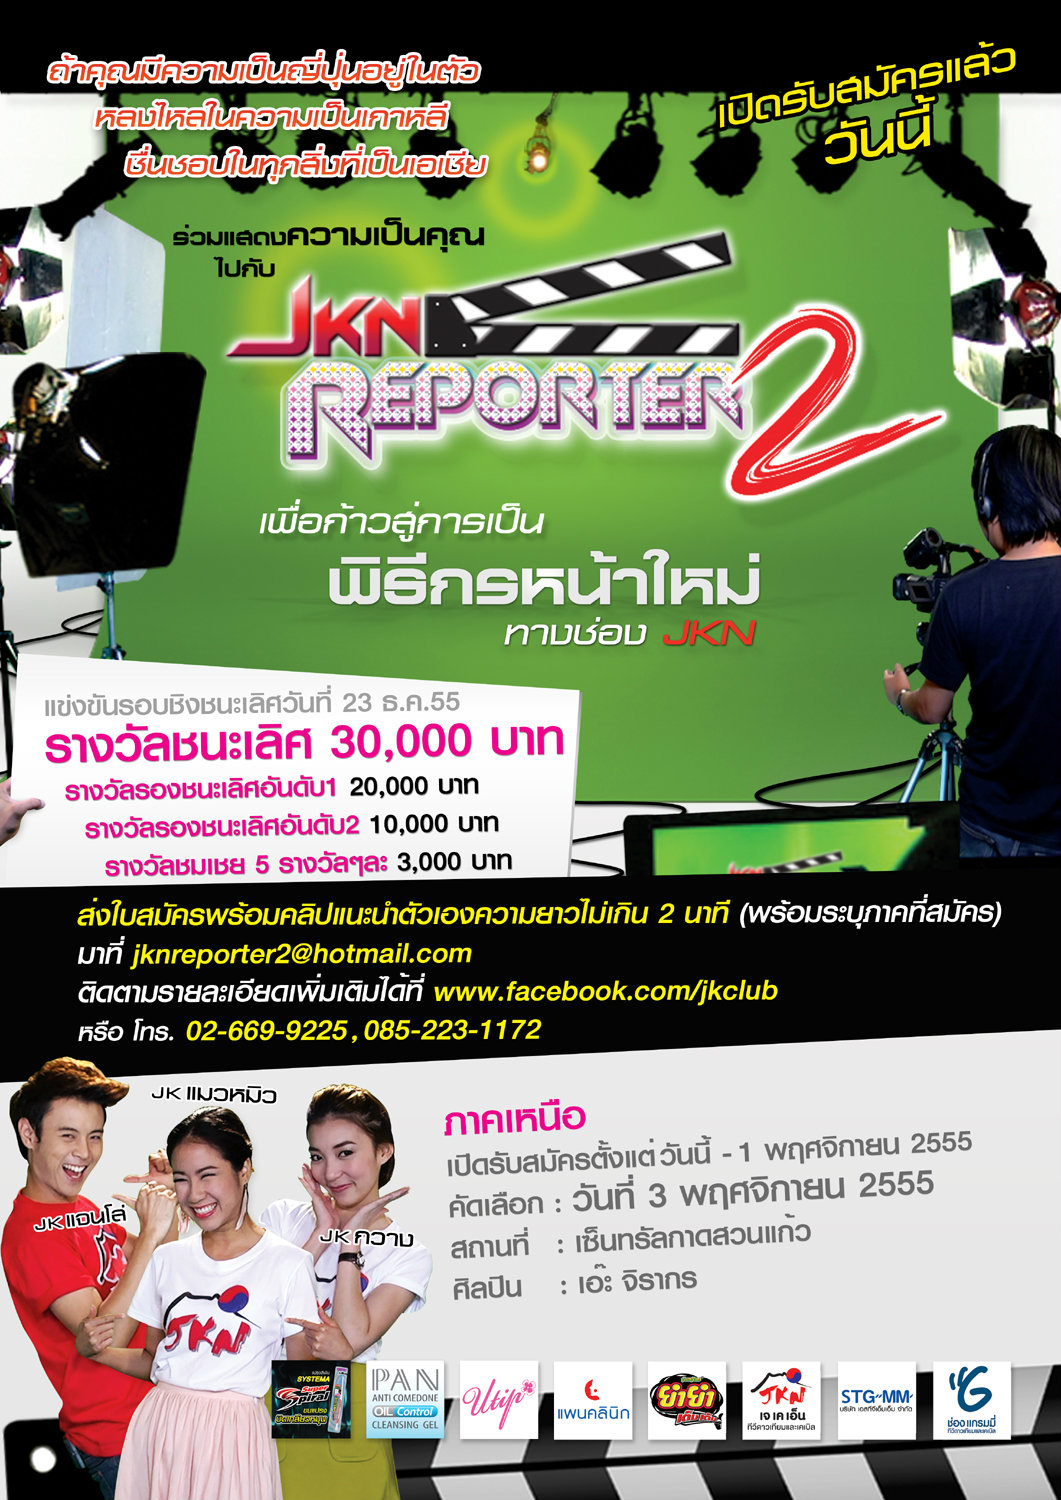 jkn reporter 2